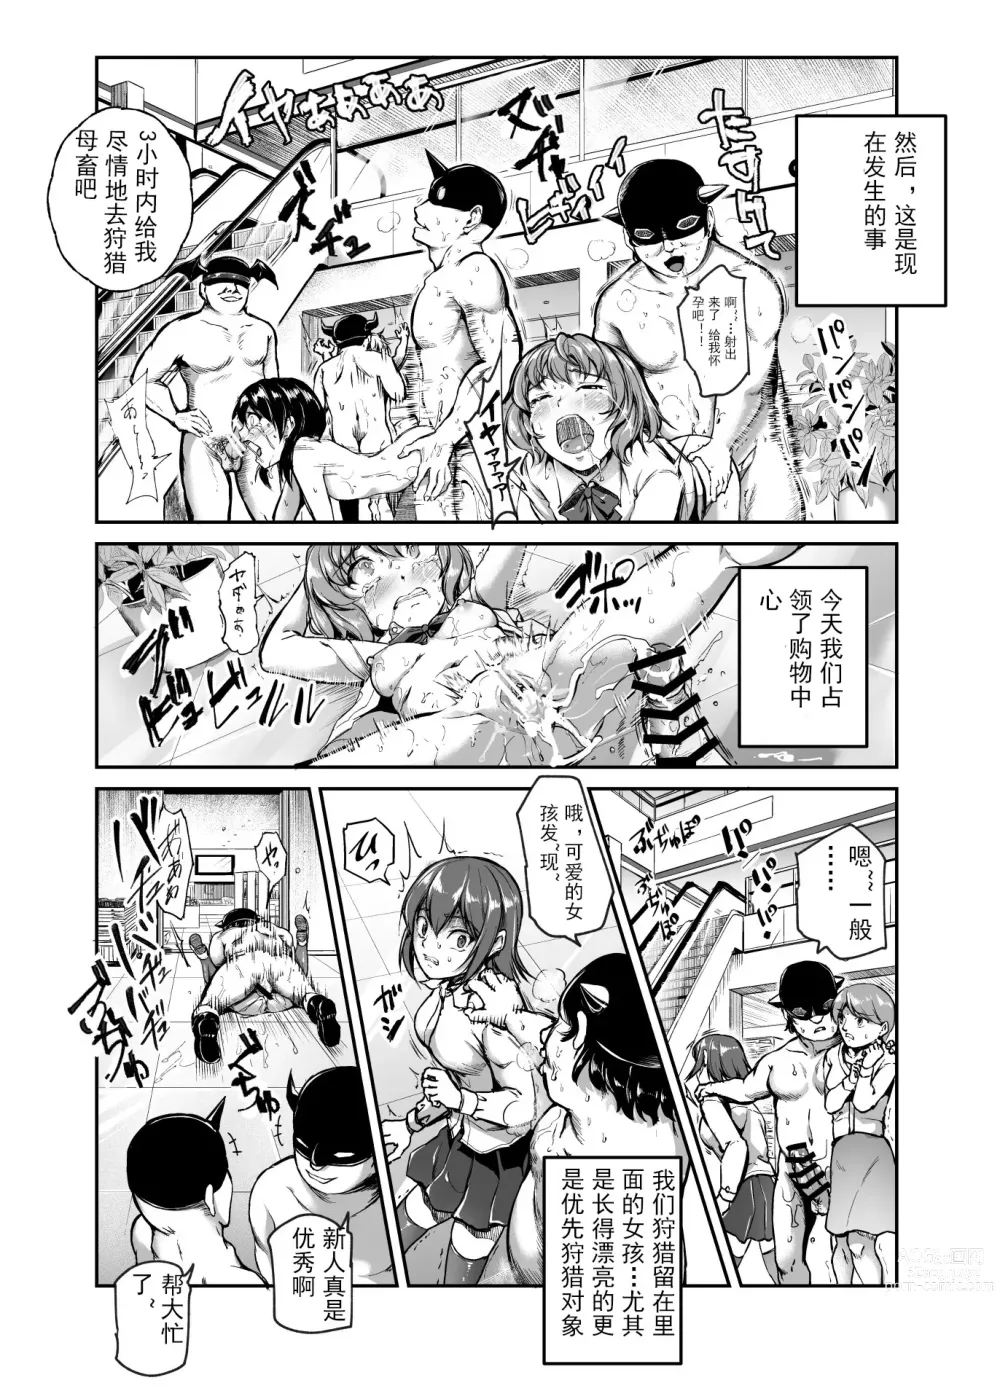 Page 12 of doujinshi 进入邪恶组织工作的话，就可以放肆享受女人性爱自助了吗?EX